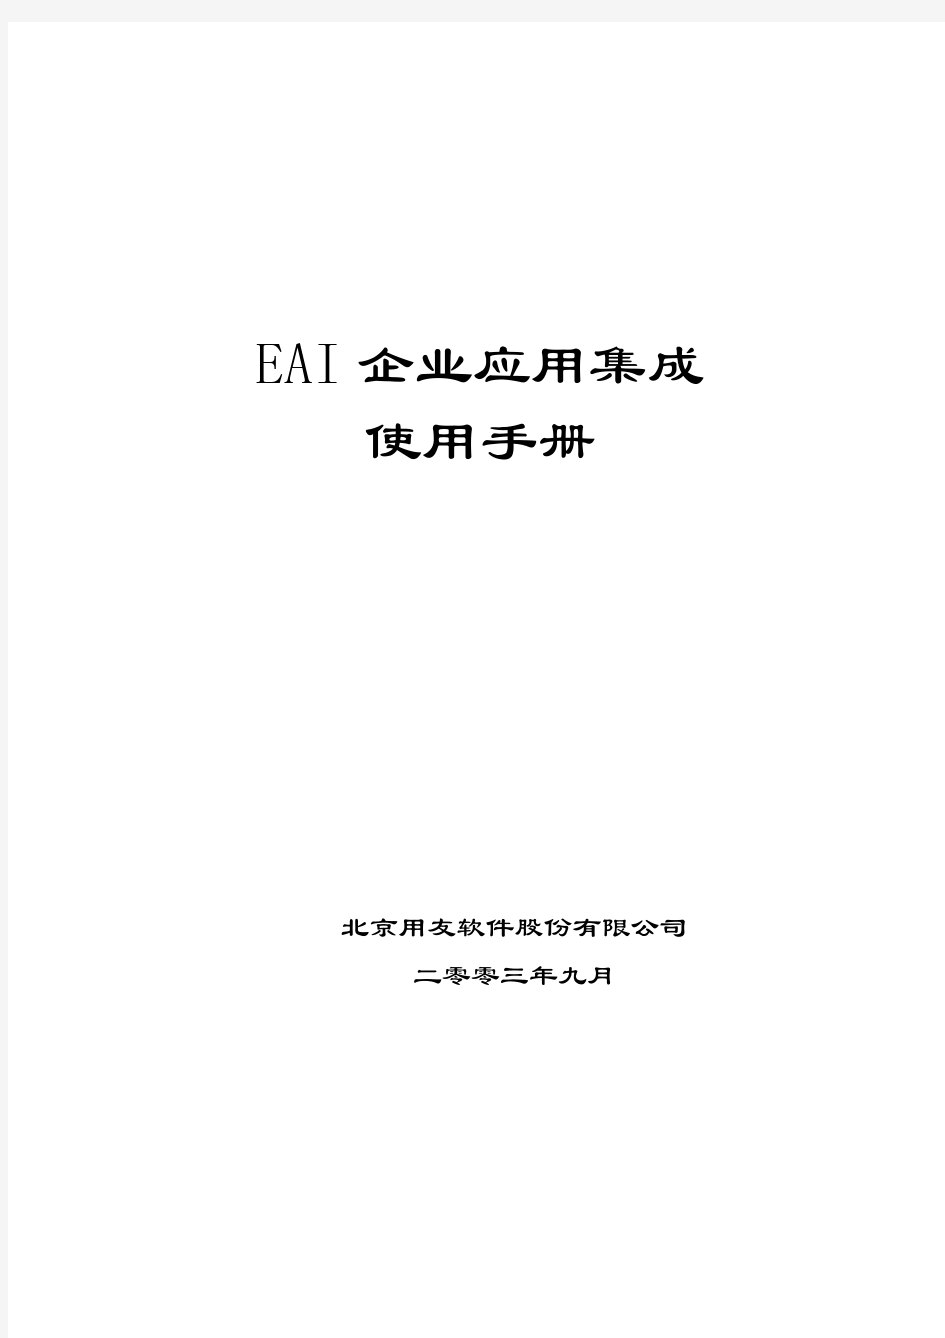 用友U8操作手册大全-EAI企业应用集成